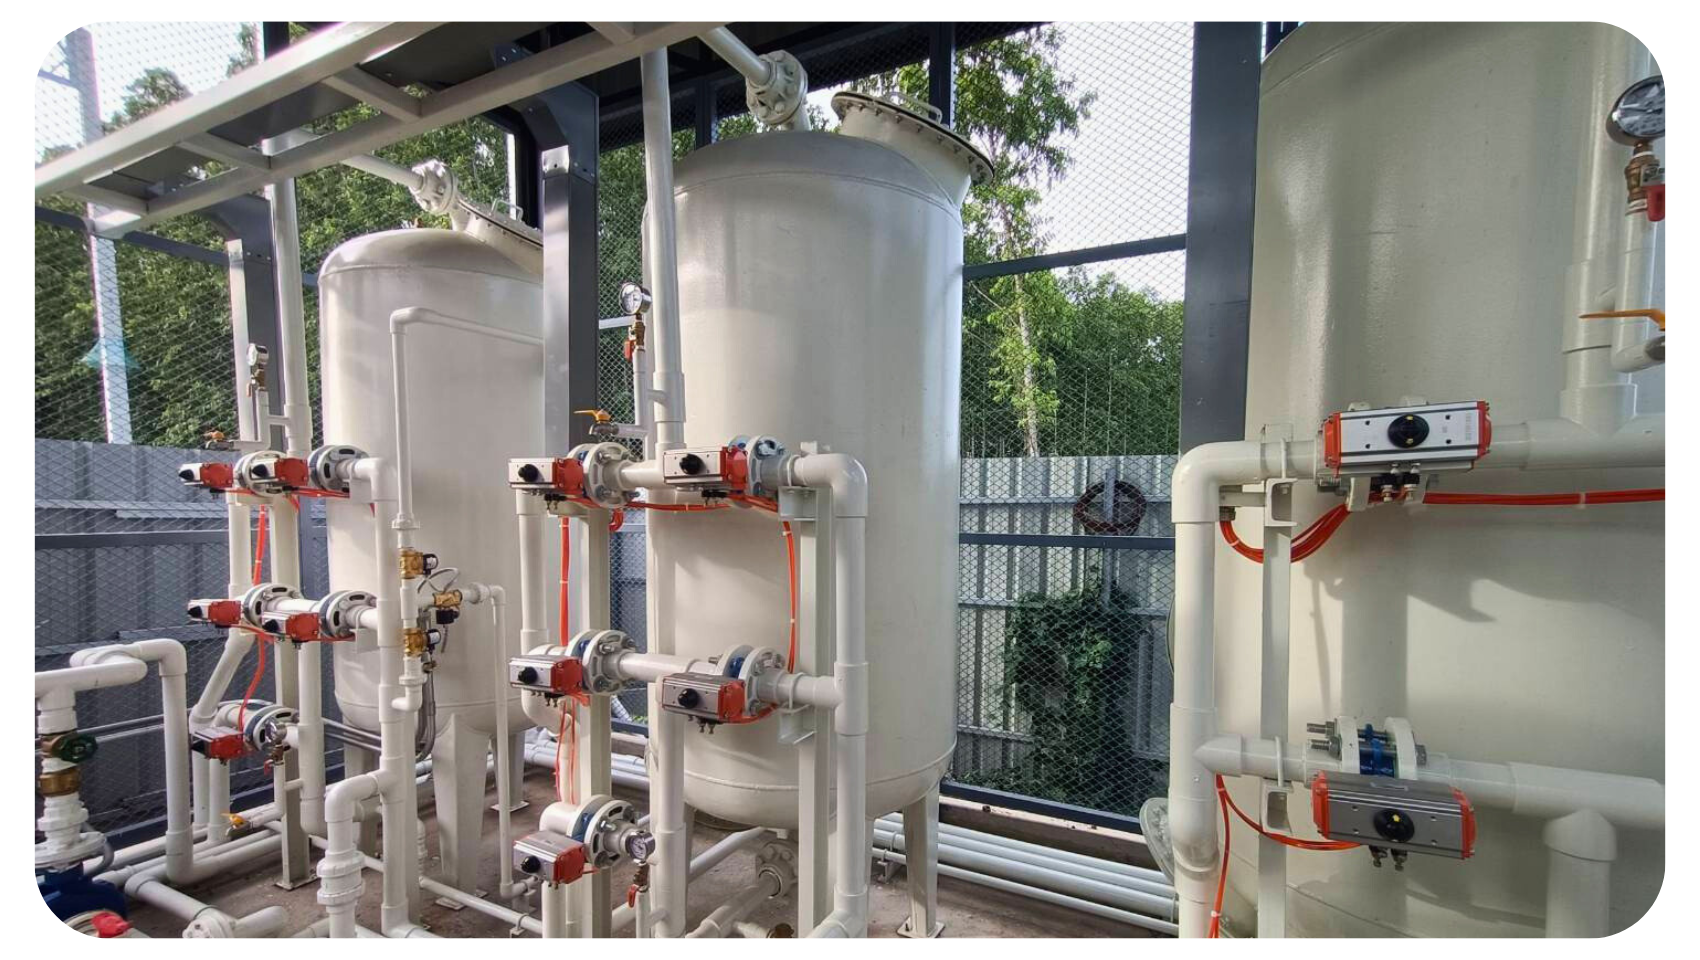 ระบบกรองน้ำบาดาลที่เป็น Softener ใช้ใน Cooling, Boiler